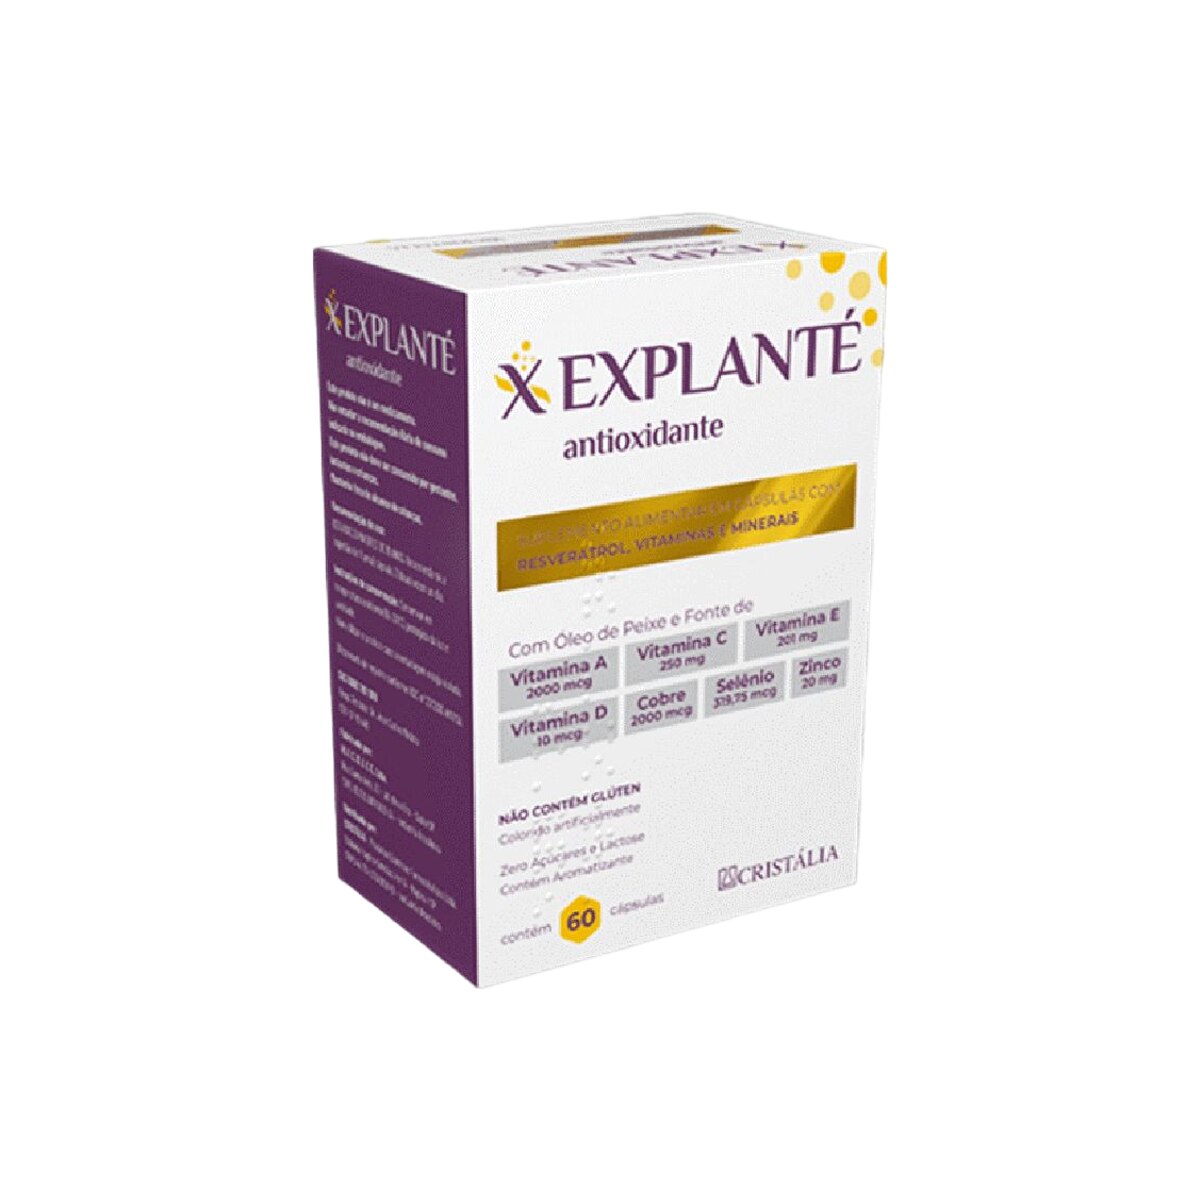 Explante Antioxidante 60 Capsulas